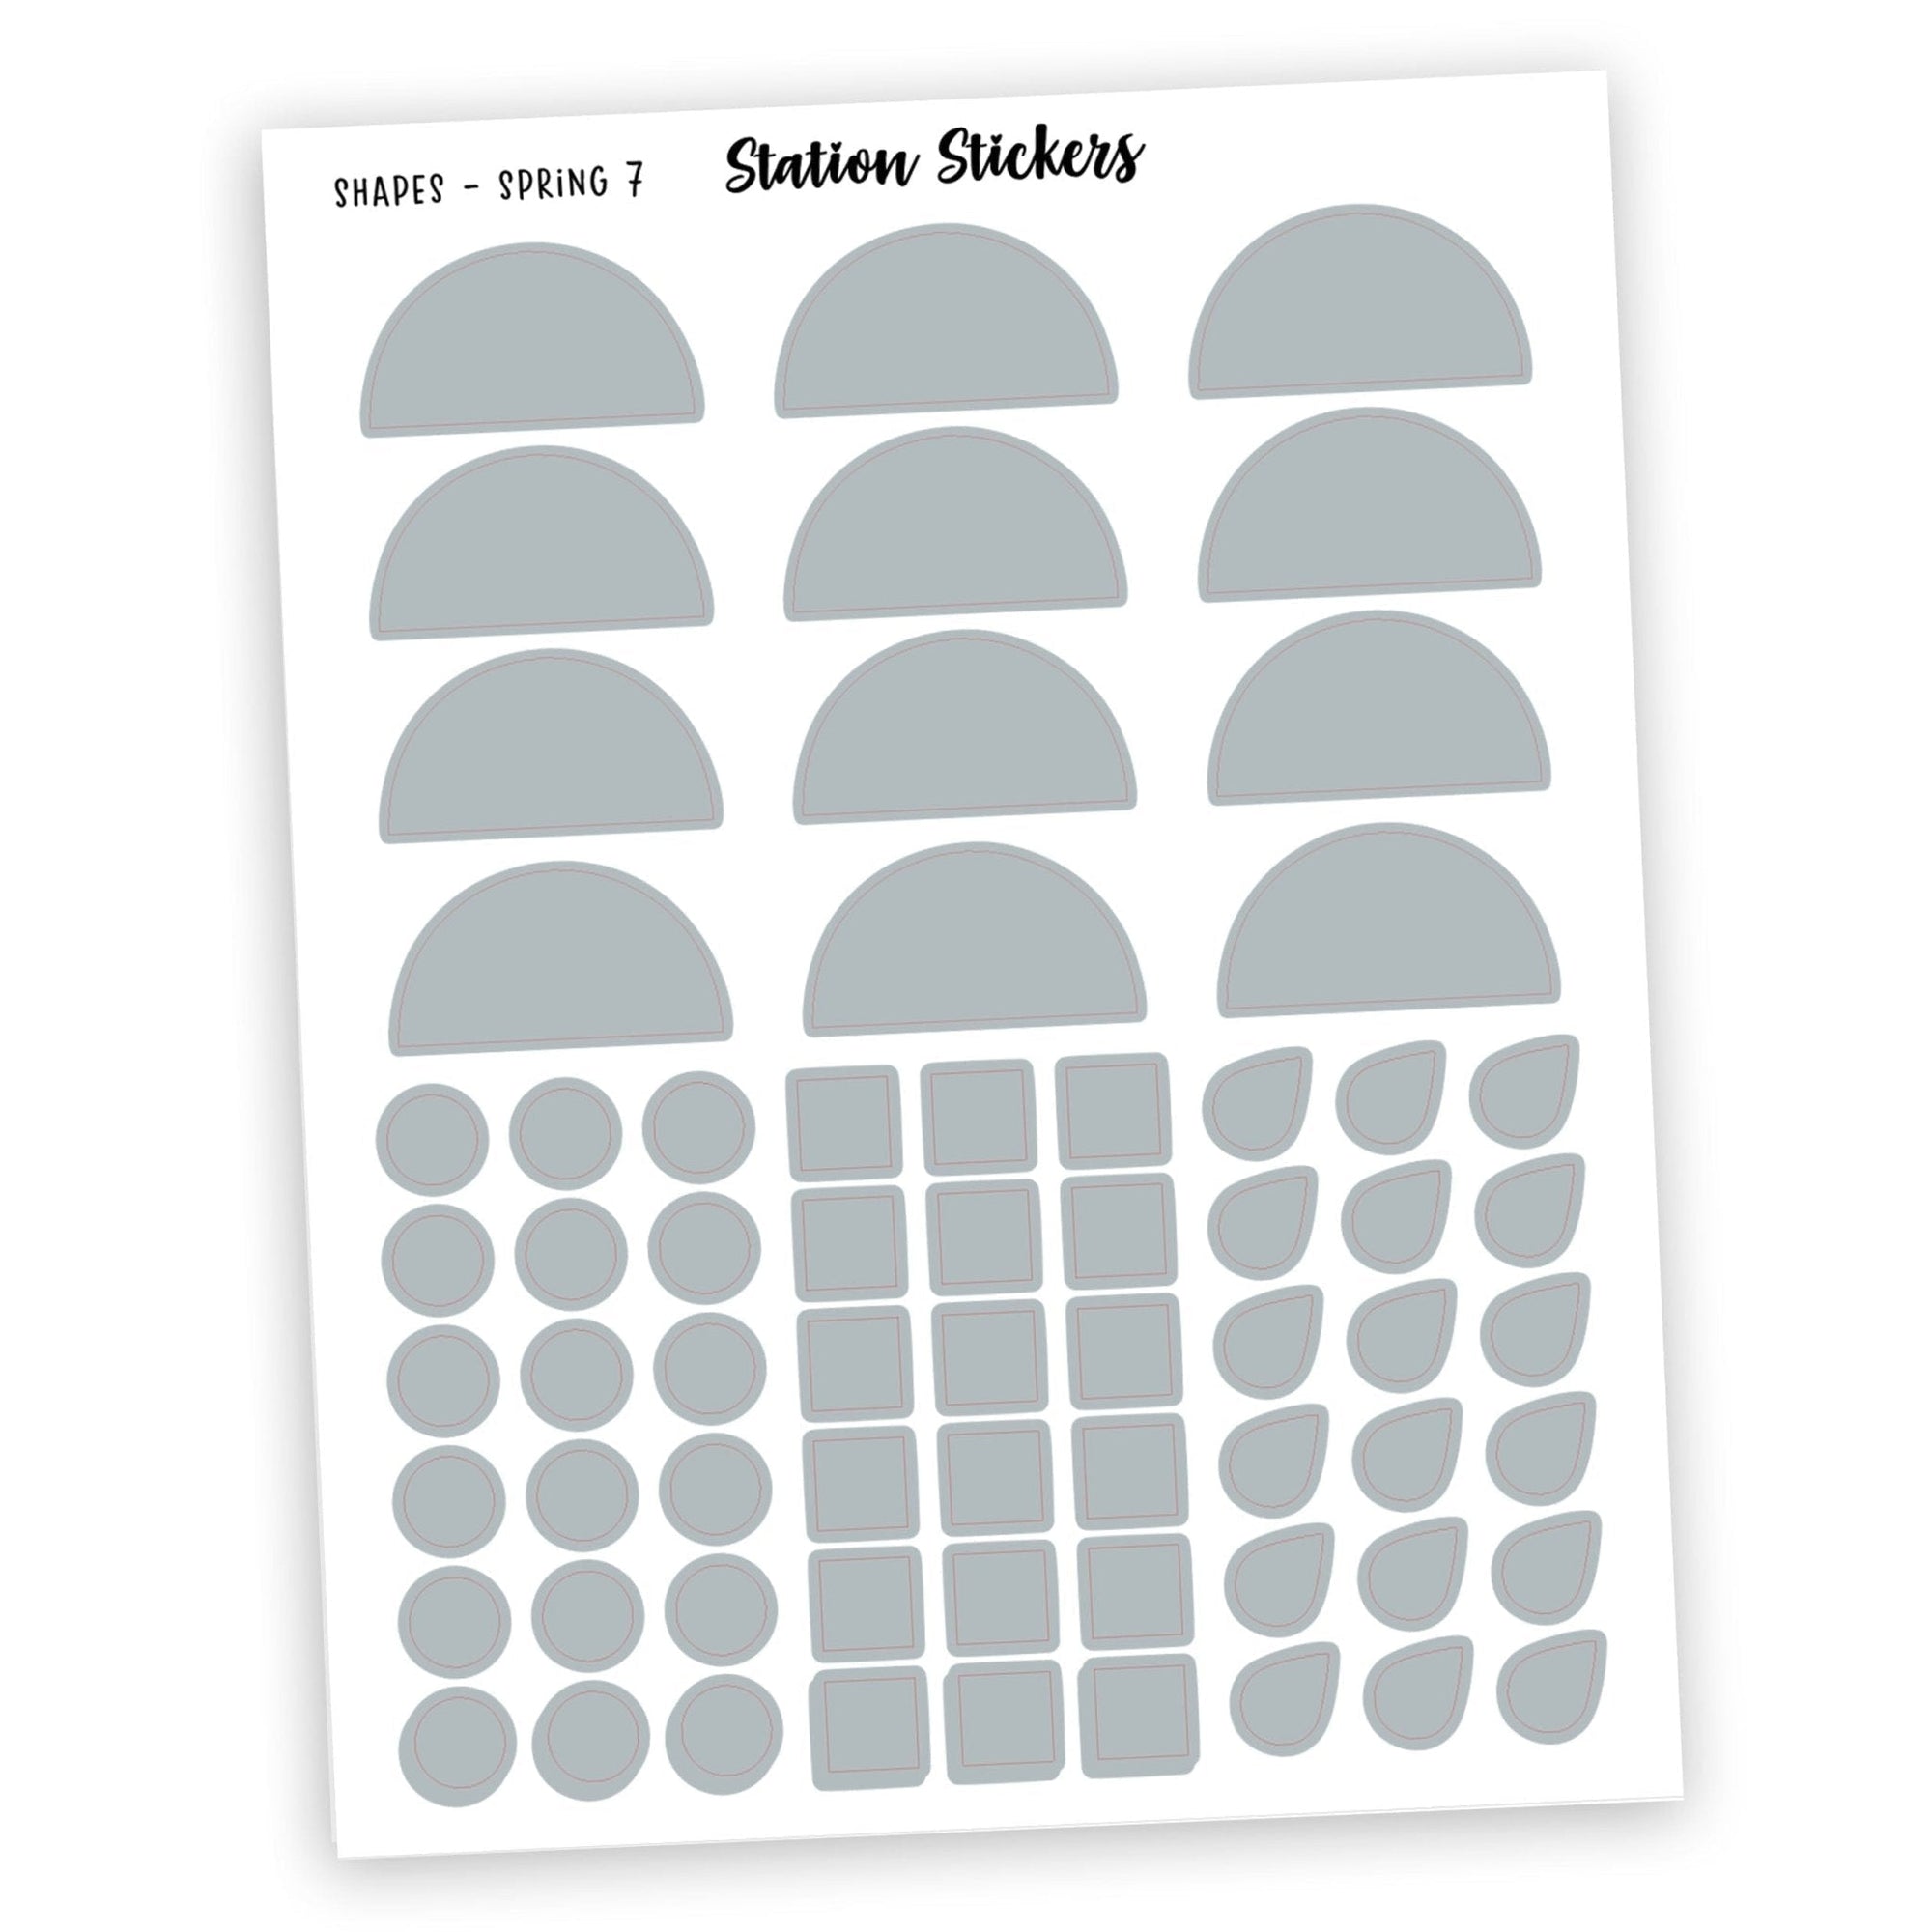 SHAPES SAMPLER - SPRING COLOR 7 - Station Stickers